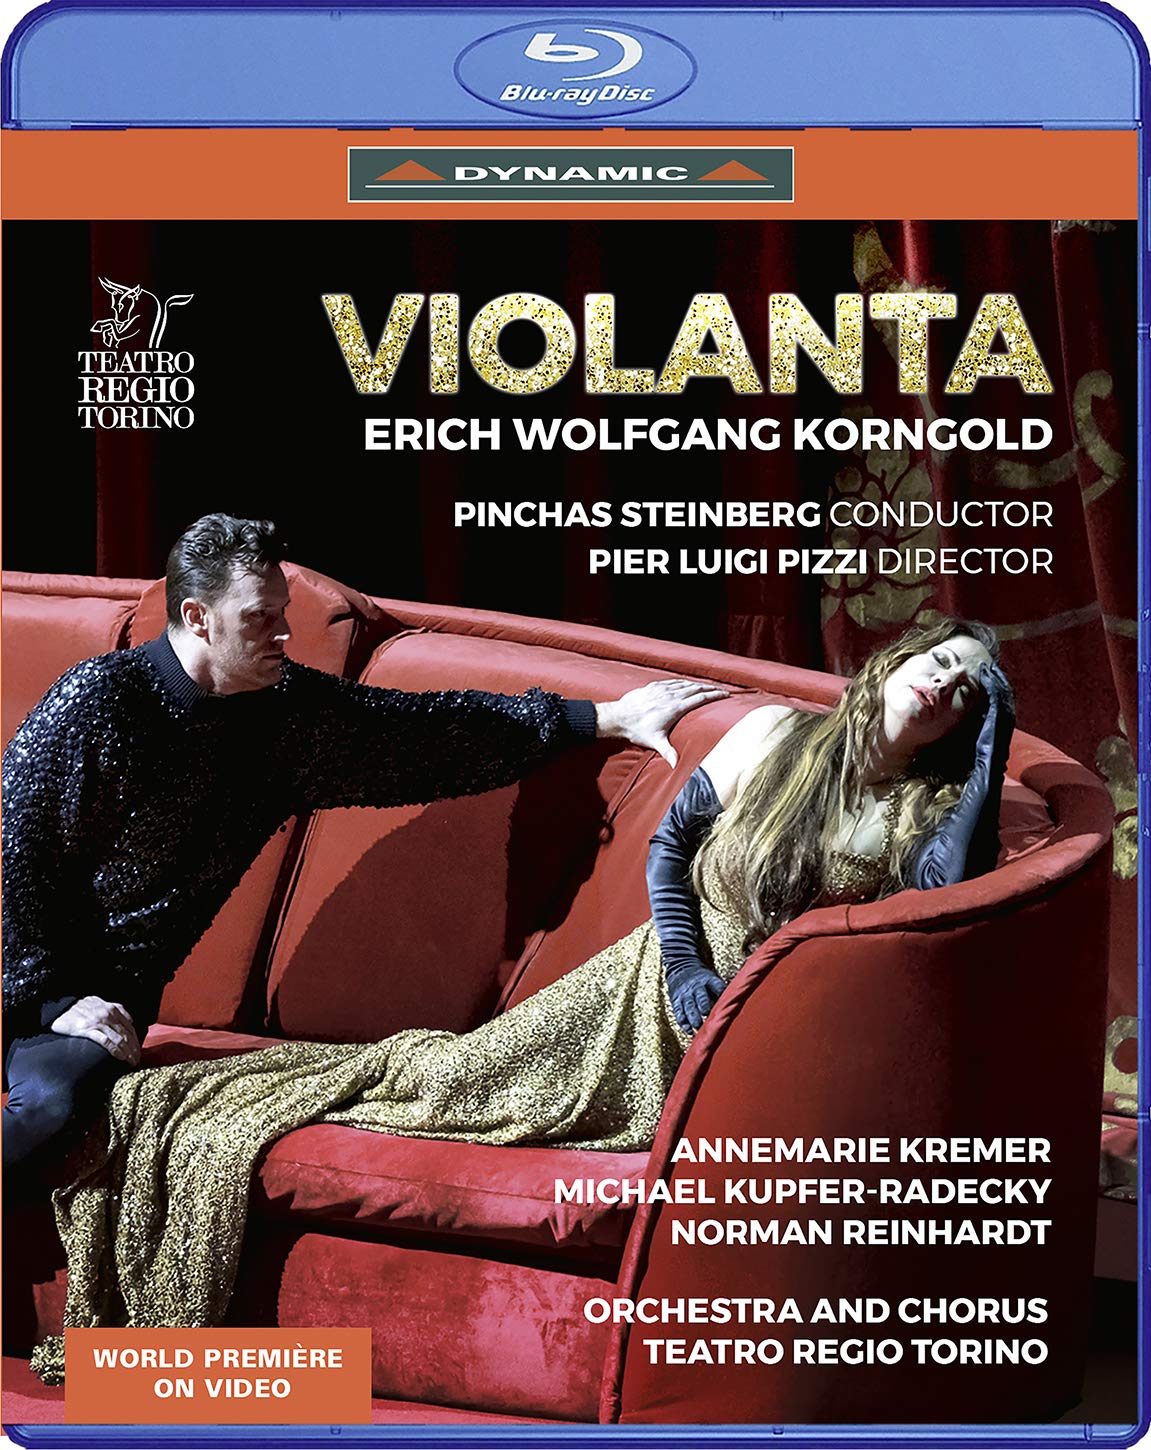 Music Blu-Ray Erich Wolfgang Korngold - Violanta NUOVO SIGILLATO, EDIZIONE DEL 26/05/2020 SUBITO DISPONIBILE